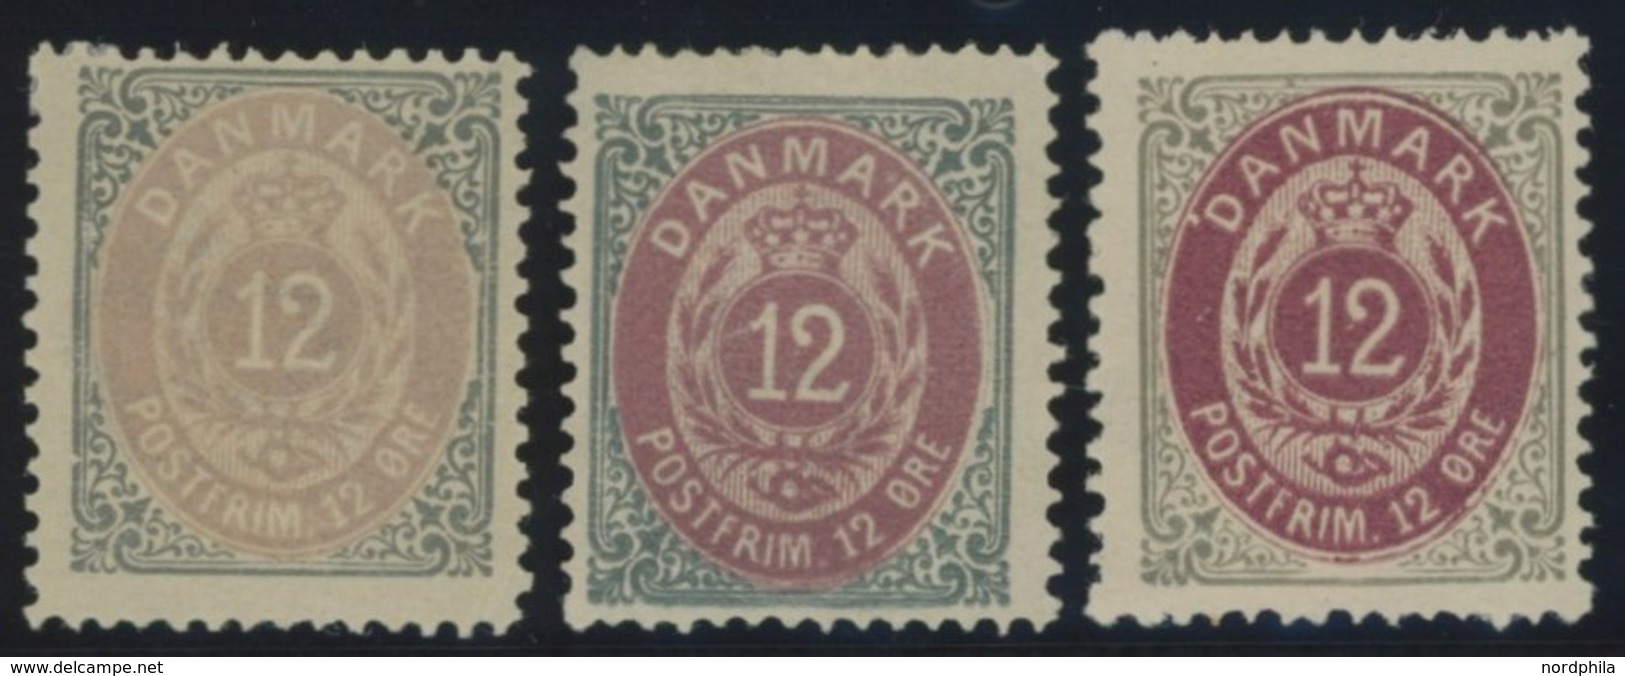 DÄNEMARK 27IYA *, 1875, 16 Ø Grau/braun, Gezähnt K 14:131/2, 3 Verschiedene Auflagen, Falzrest, Pracht - Used Stamps